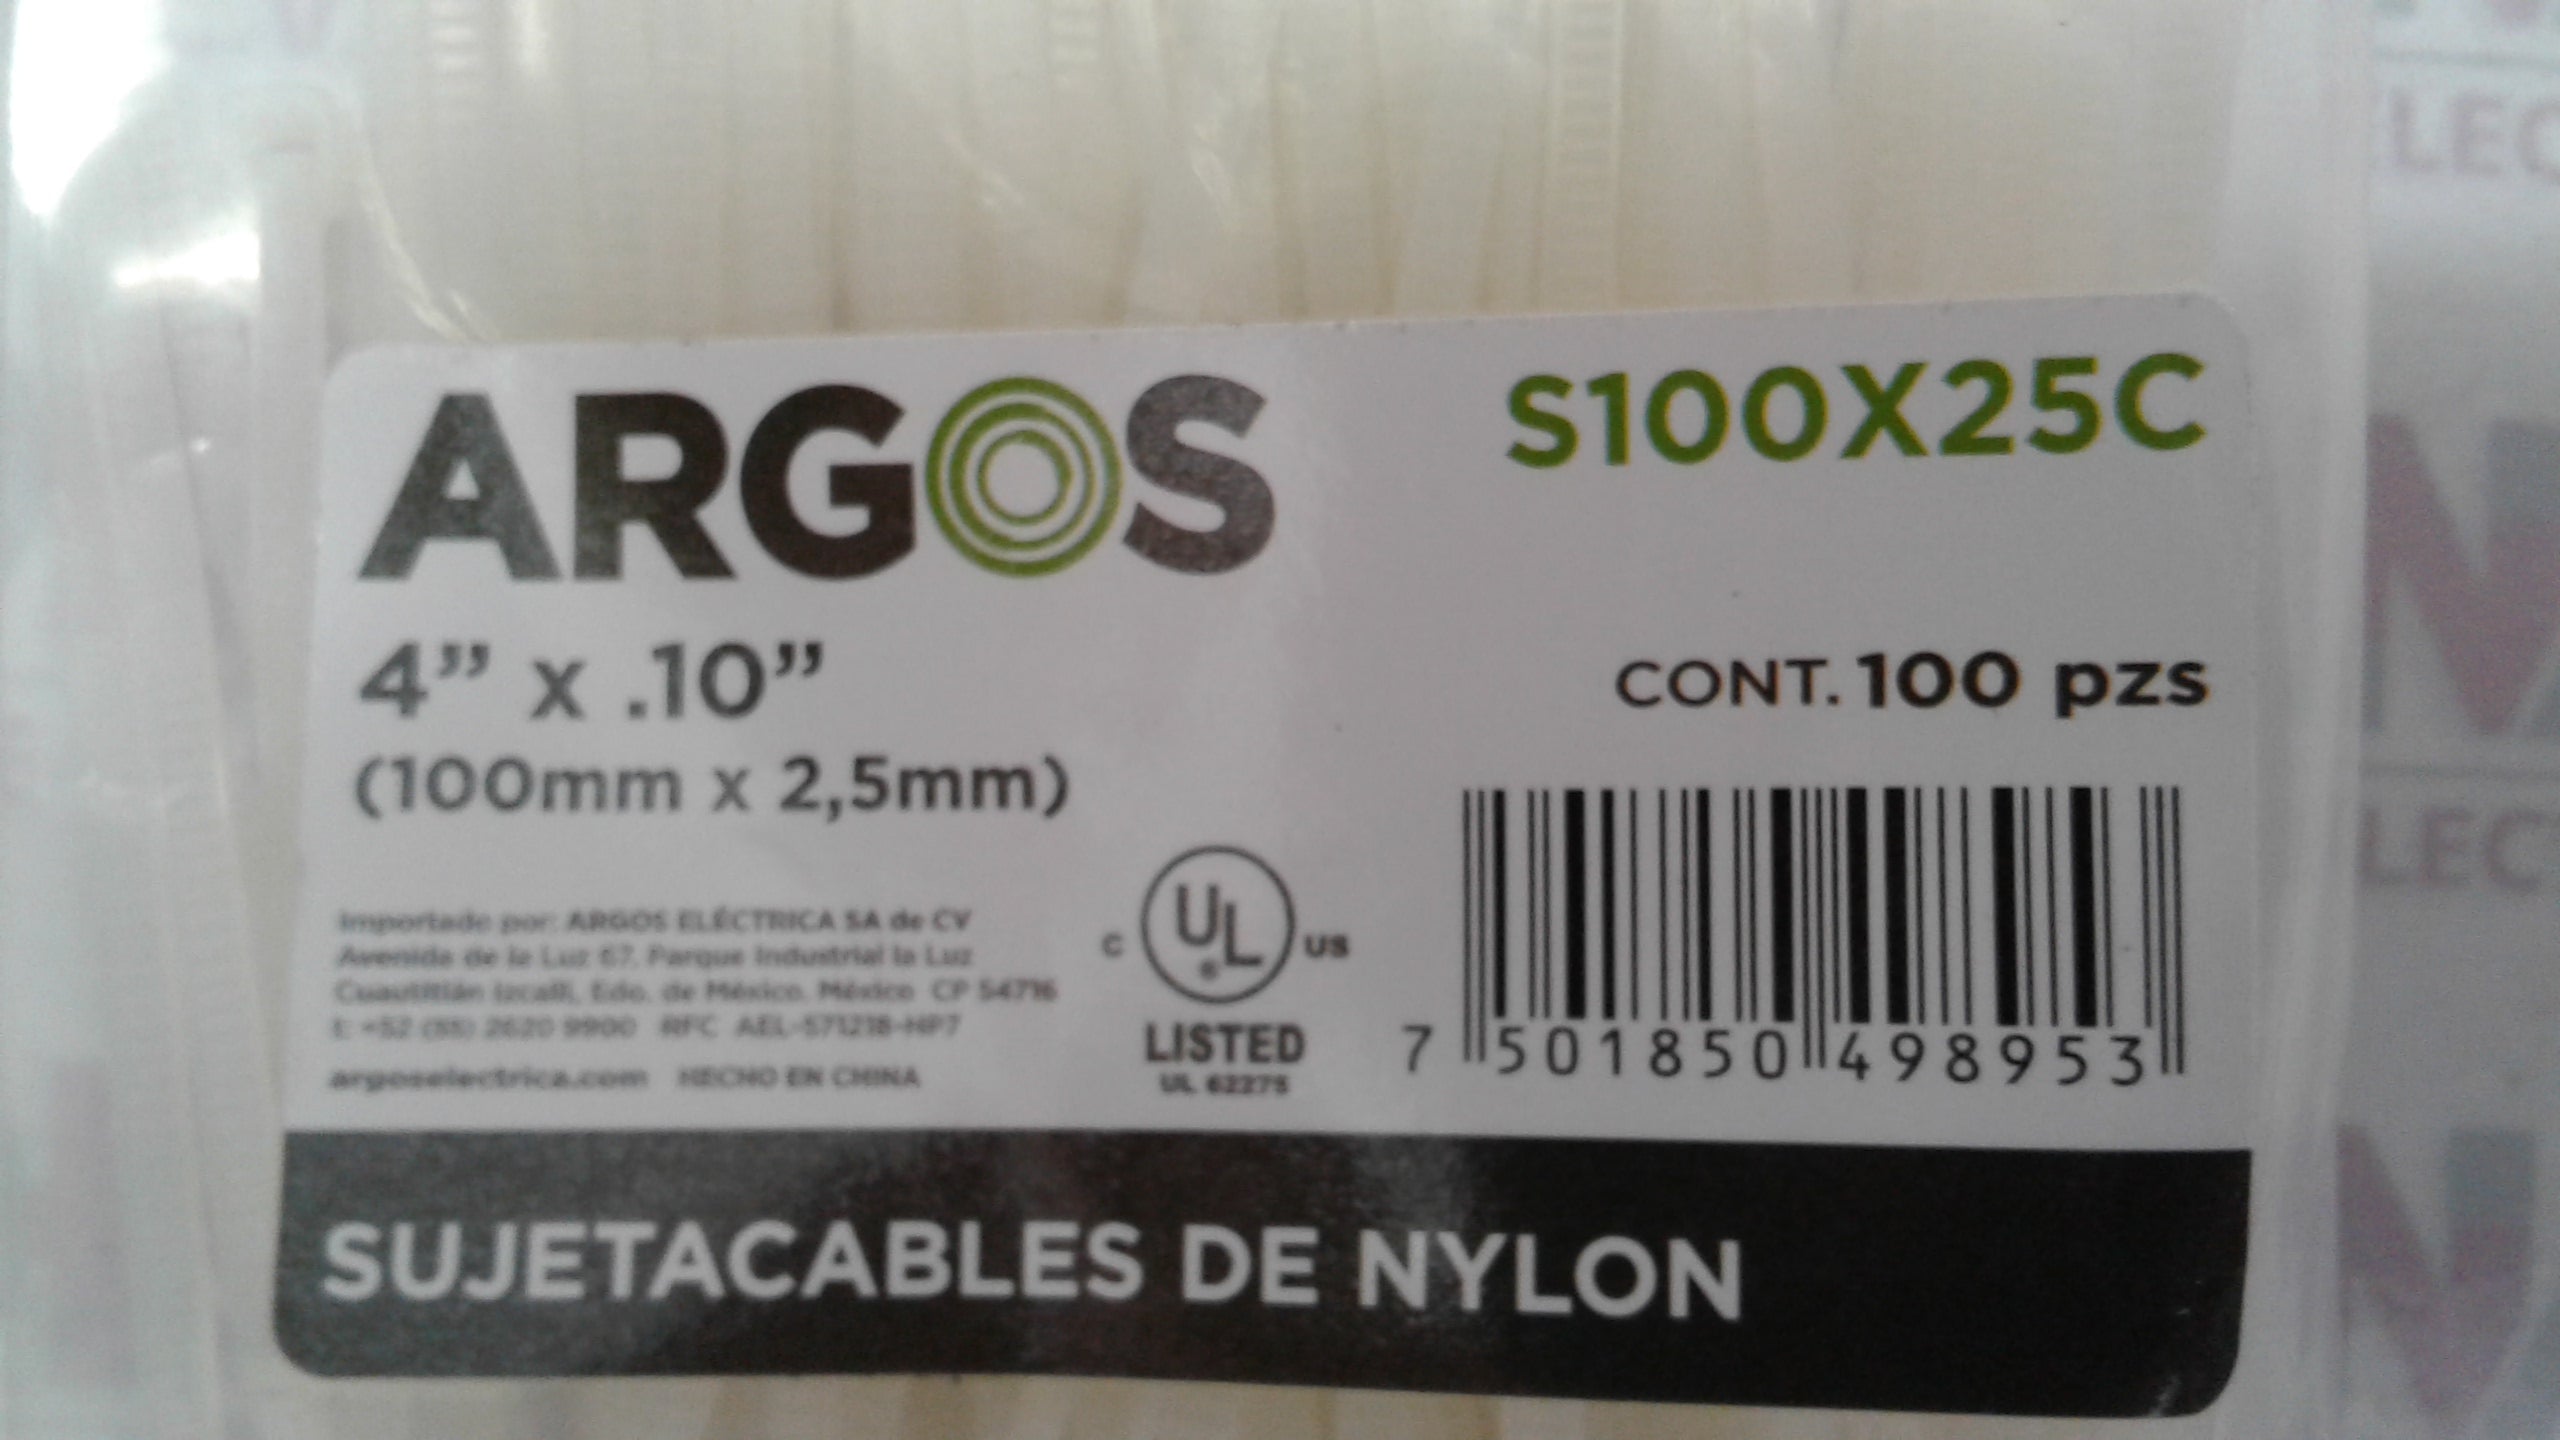 Sujetacables de nylon - Argos